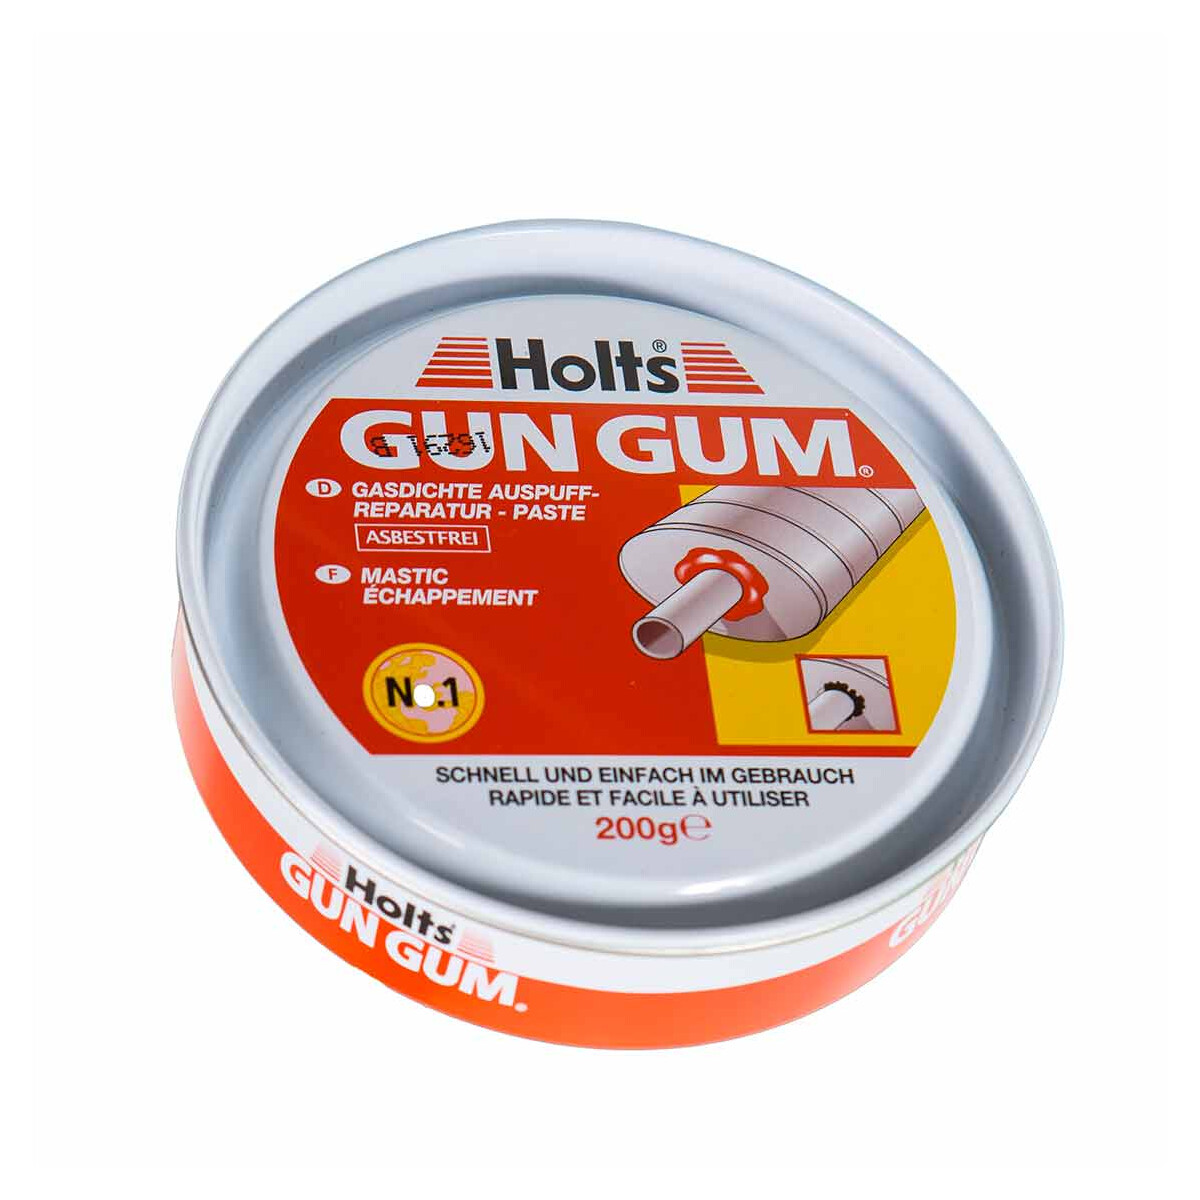 Auspuff Reparatur Paste Holts Gun Gum 2x 200g Dichtmasse hitzebeständig